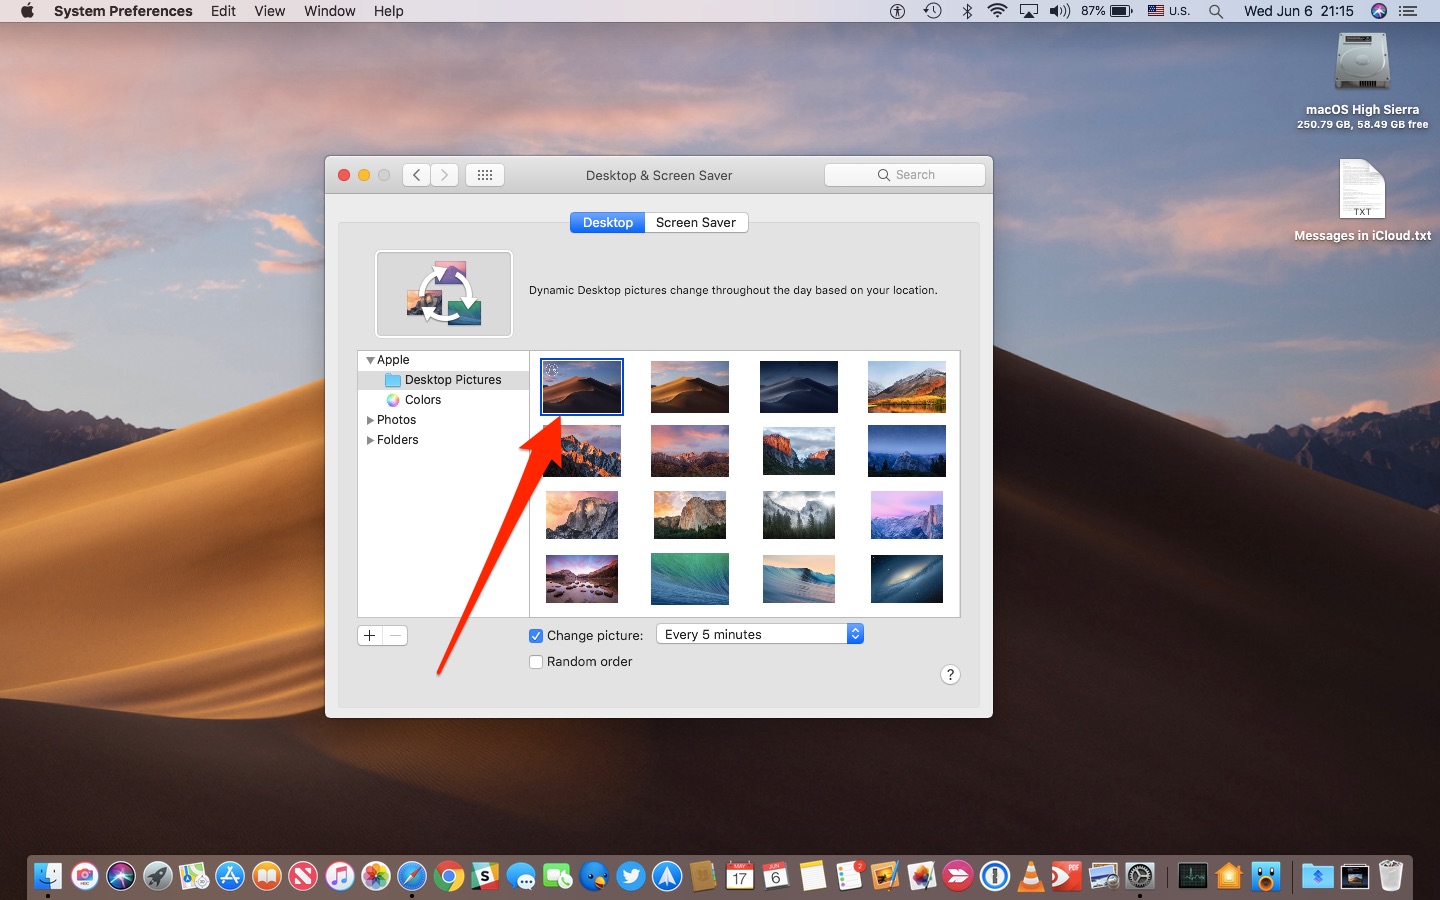 Cập nhật mới của MacOS Mojave mang đến cho người dùng nhiều tùy chọn thay đổi hình nền desktop mới và đẹp. Hãy khám phá cách thiết lập hình nền theo ý thích của bạn, sắp xếp các phông chữ, chọn độ tương phản và ánh sáng phù hợp, và tạo ra không gian làm việc sản xuất và khác biệt.